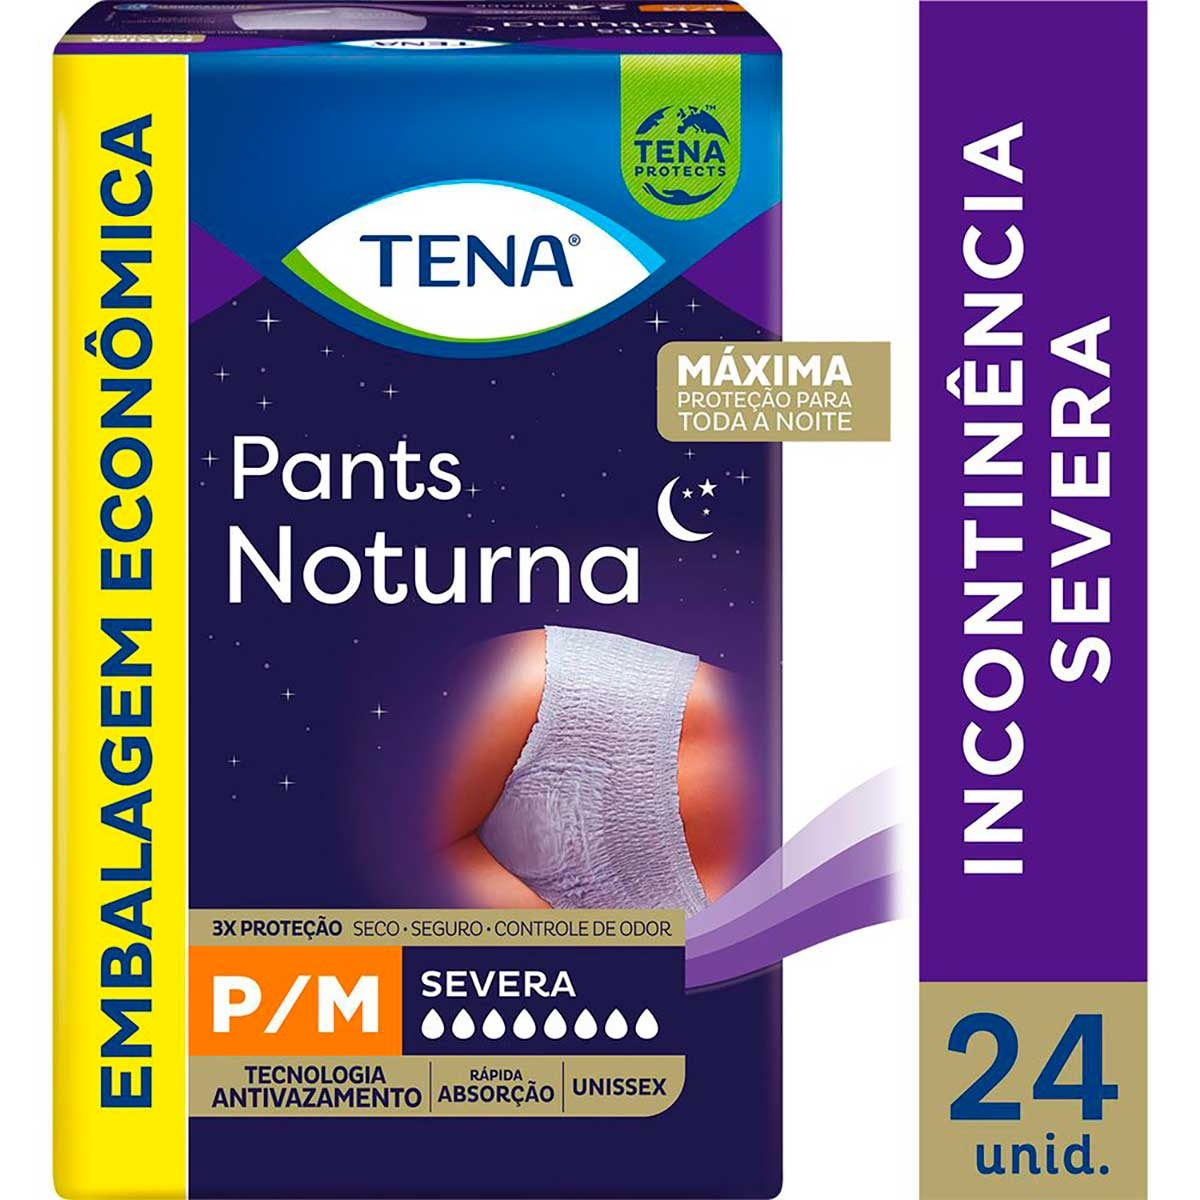 https://img.drogaraia.com.br/media/catalog/product/f/r/fralda-calca-tena-pants-noturna-pm-24-unidades-1.jpg